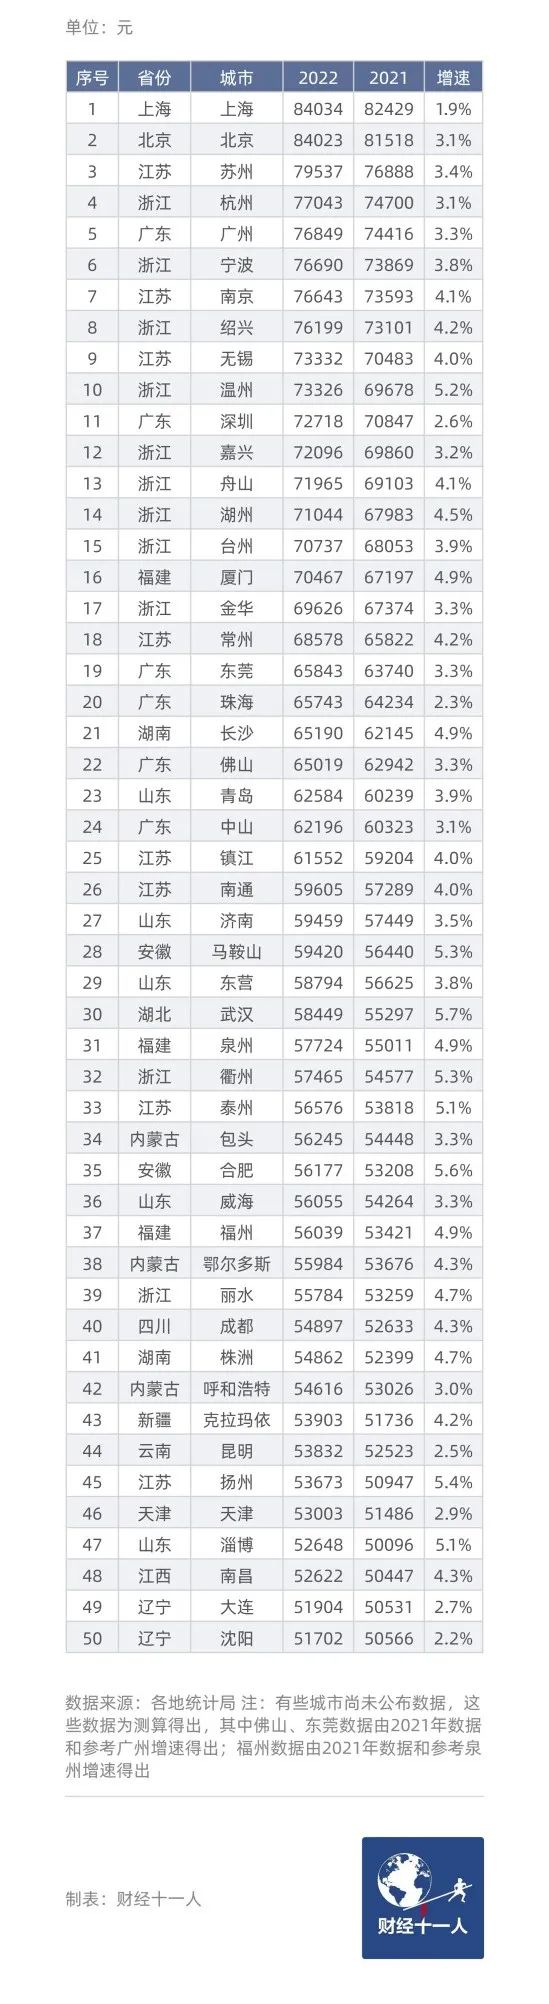 表1: 中国地级以上城市城镇居民人均可支配收入50强